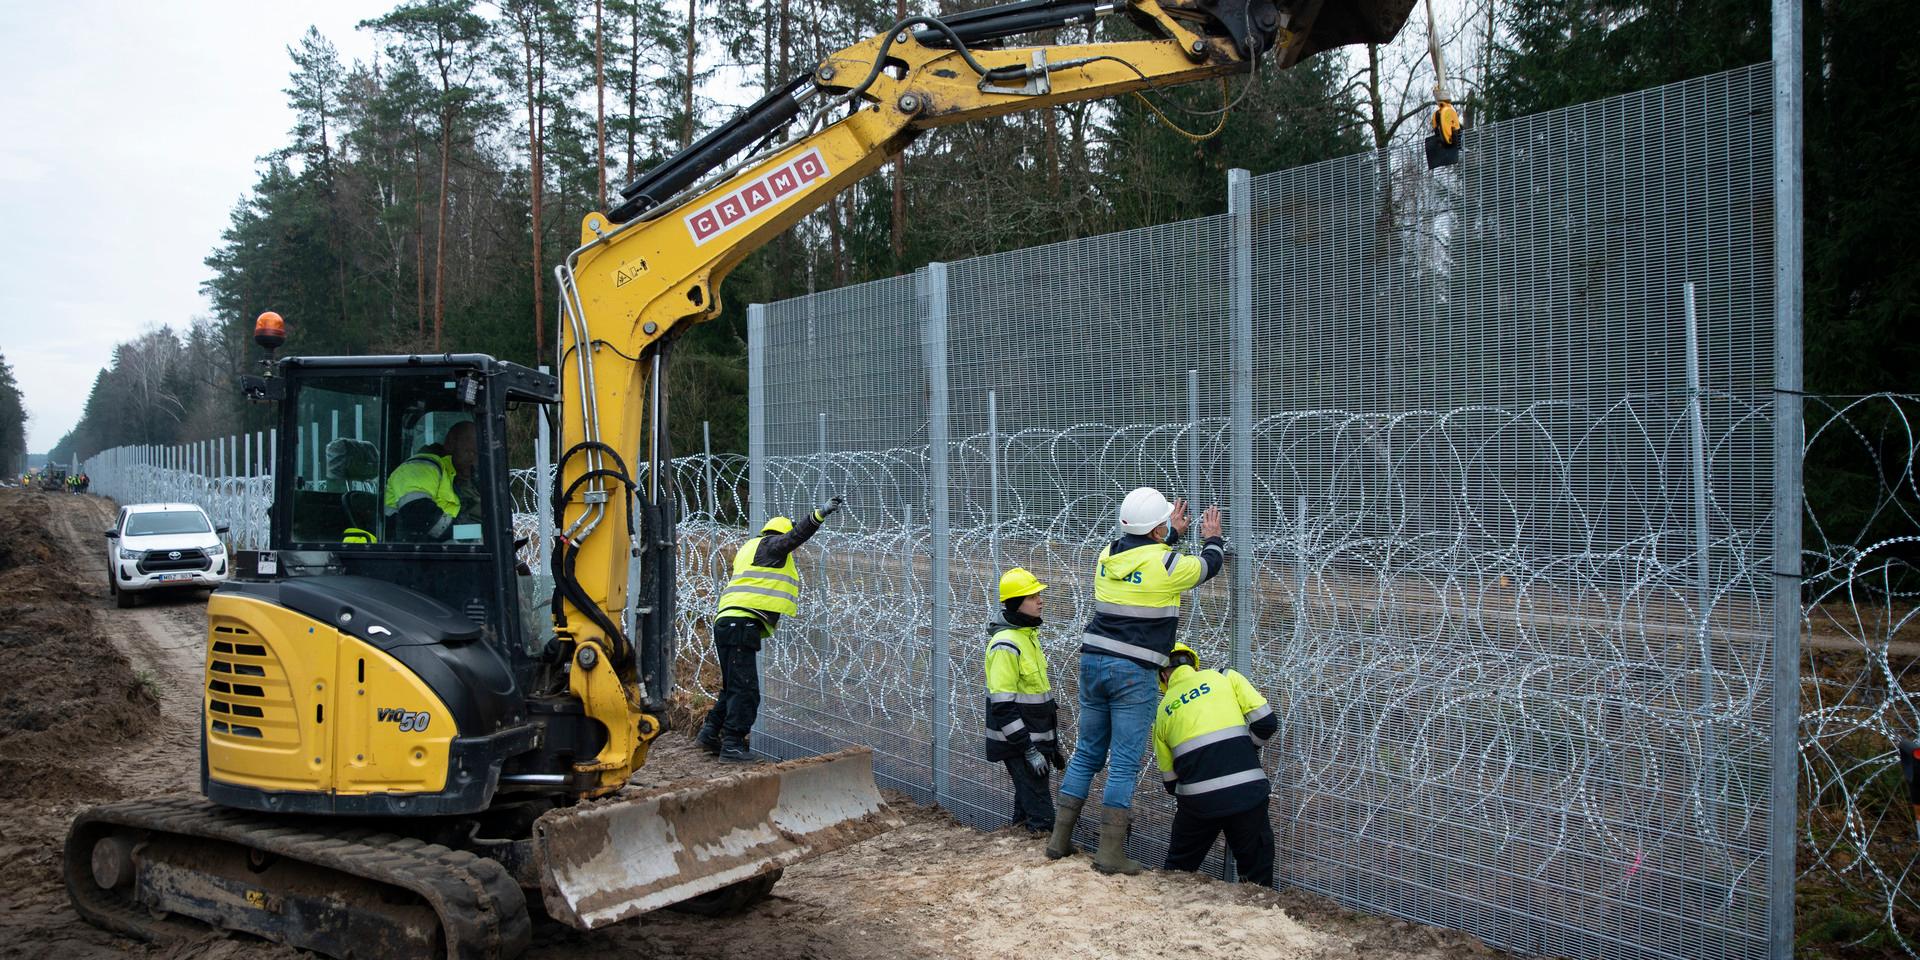 Litauen förstärker gränsen mot Belarus. Ett fyra meter högt stängsel med taggtråd började uppföras hösten 2021 längs den drygt 500 kilometer långa gränsen.